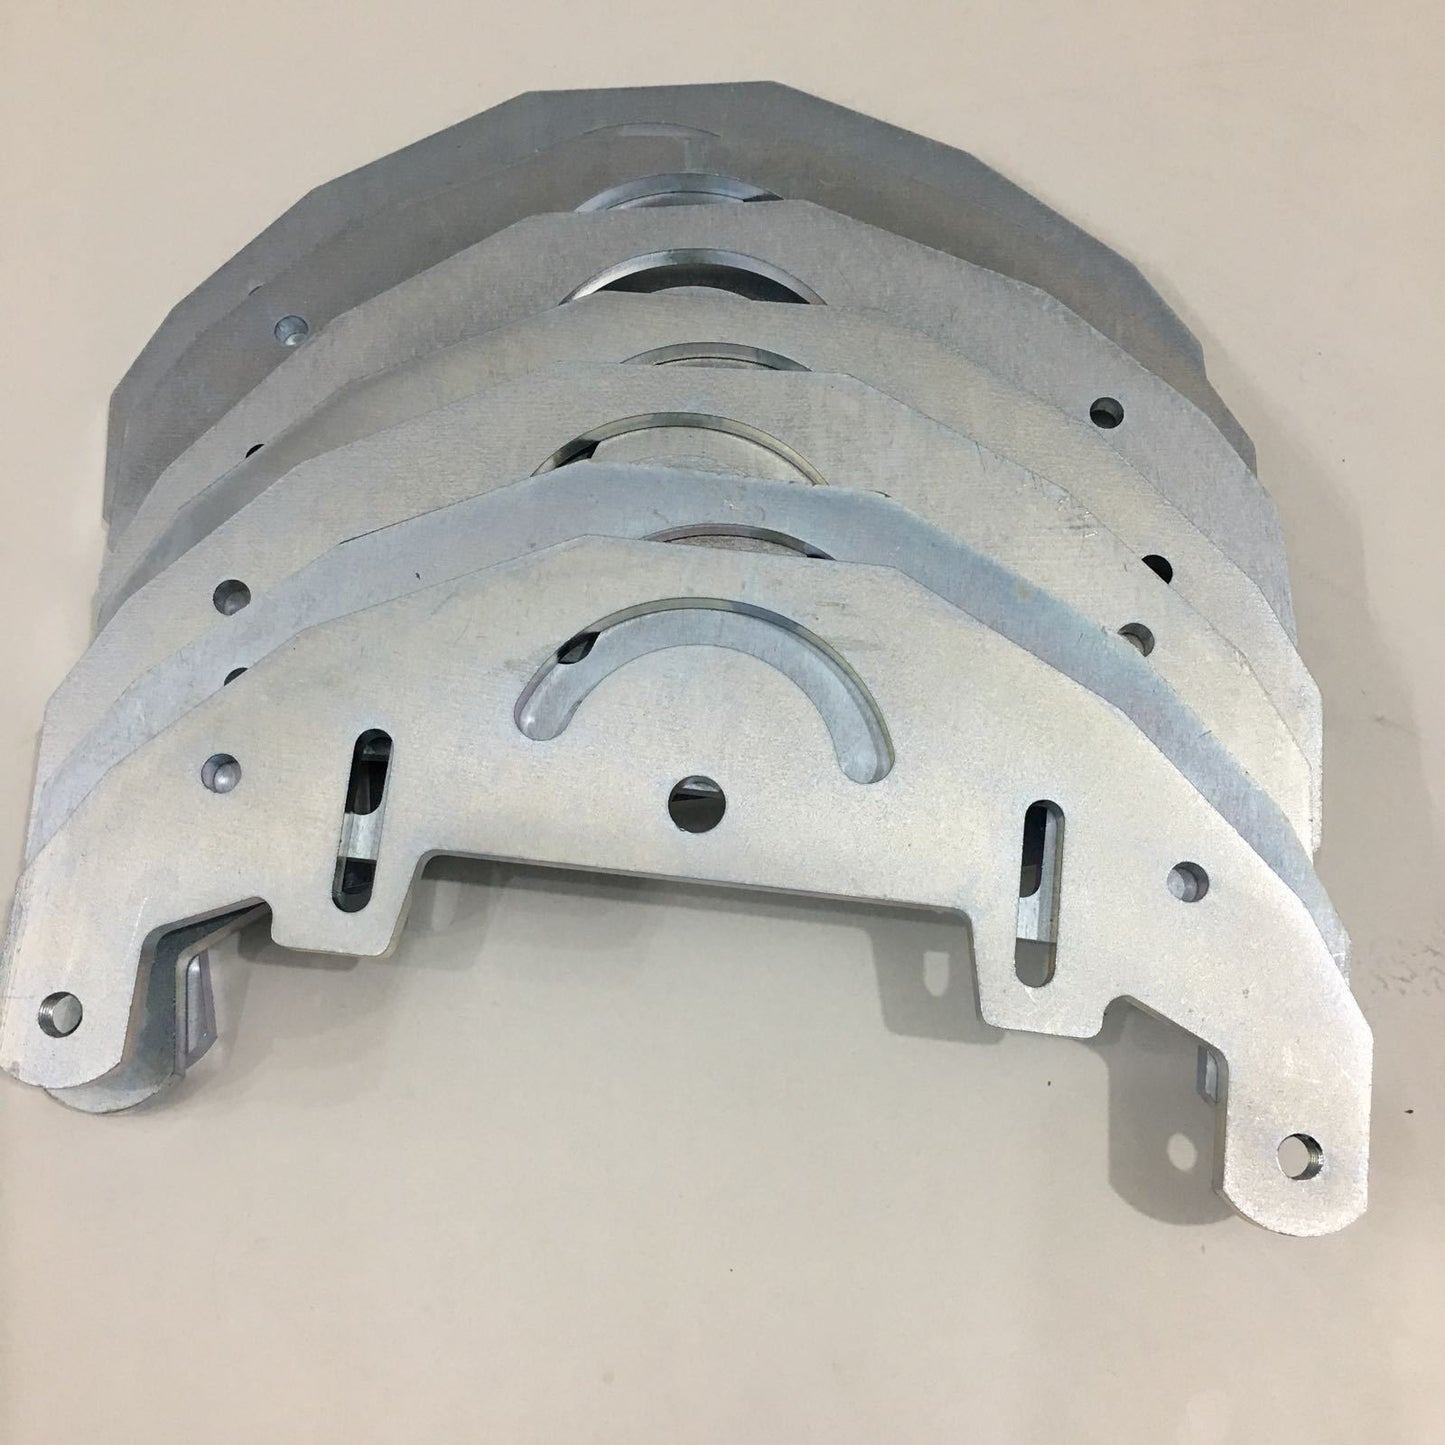 TR Maker Belt Grinder plate for 2x72" making grinder / belt grinder